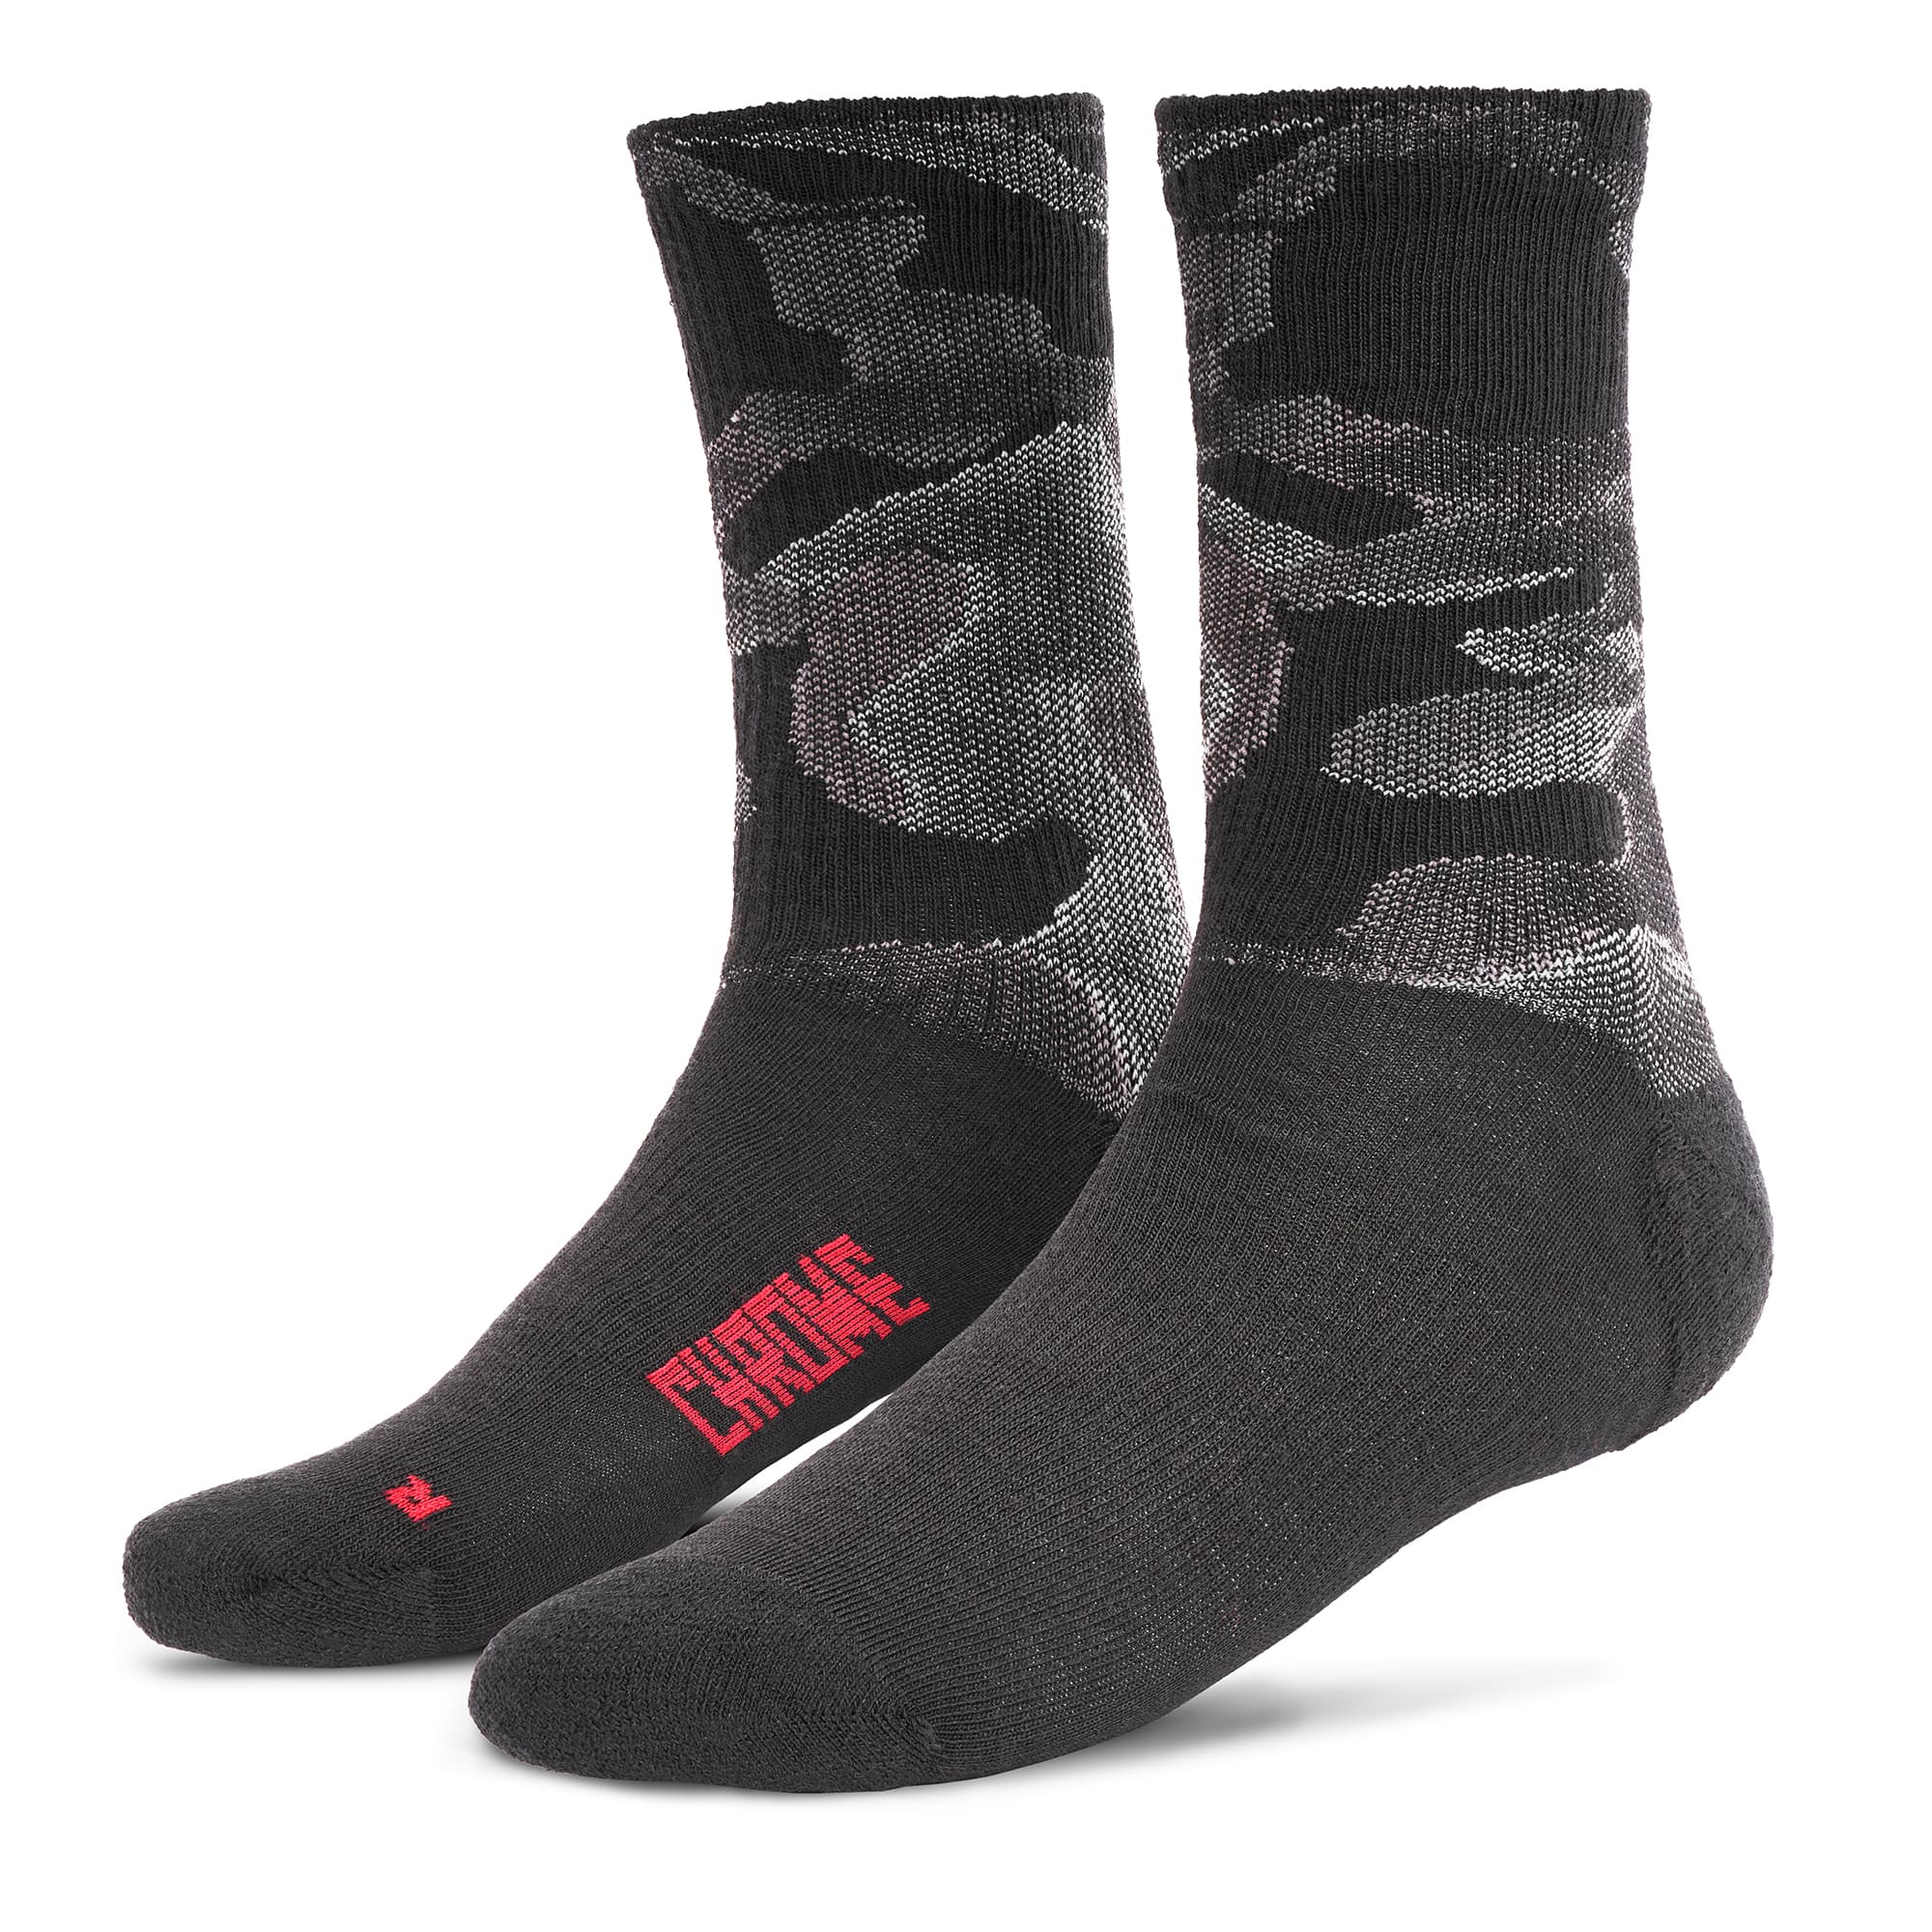 Merino Wool Crew Socks in grey camo #color_grey camo